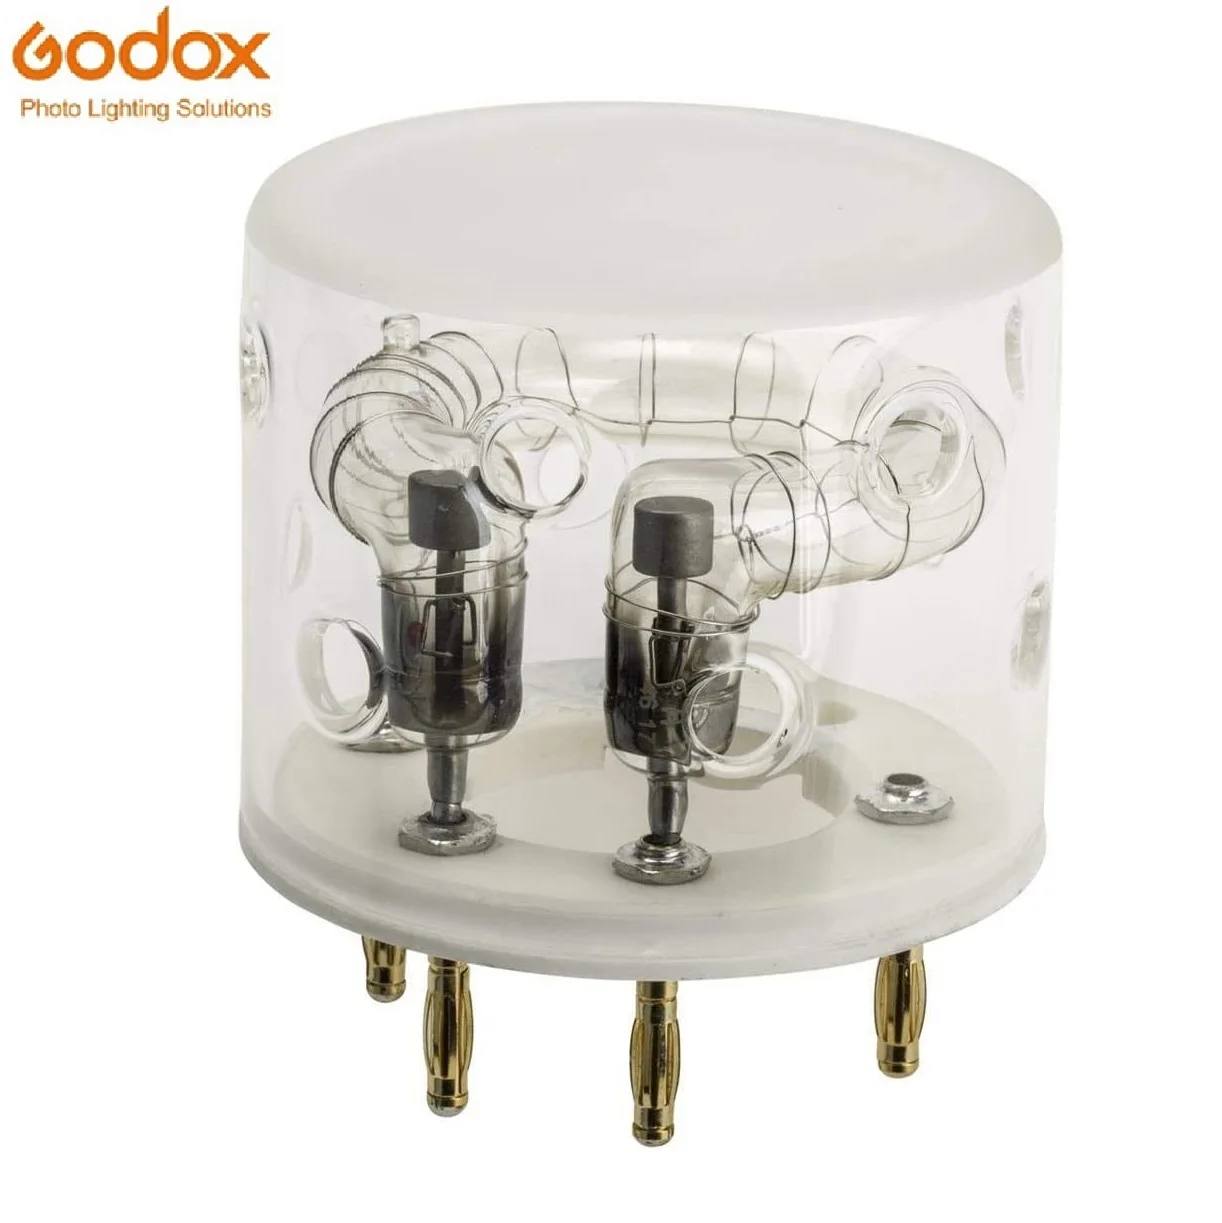 Godox Flash Tube for Godox AD600 Pro Compatible for Flashpoint XPLOR 600 Pro Flash Head Godox AD600 Pro Bulb